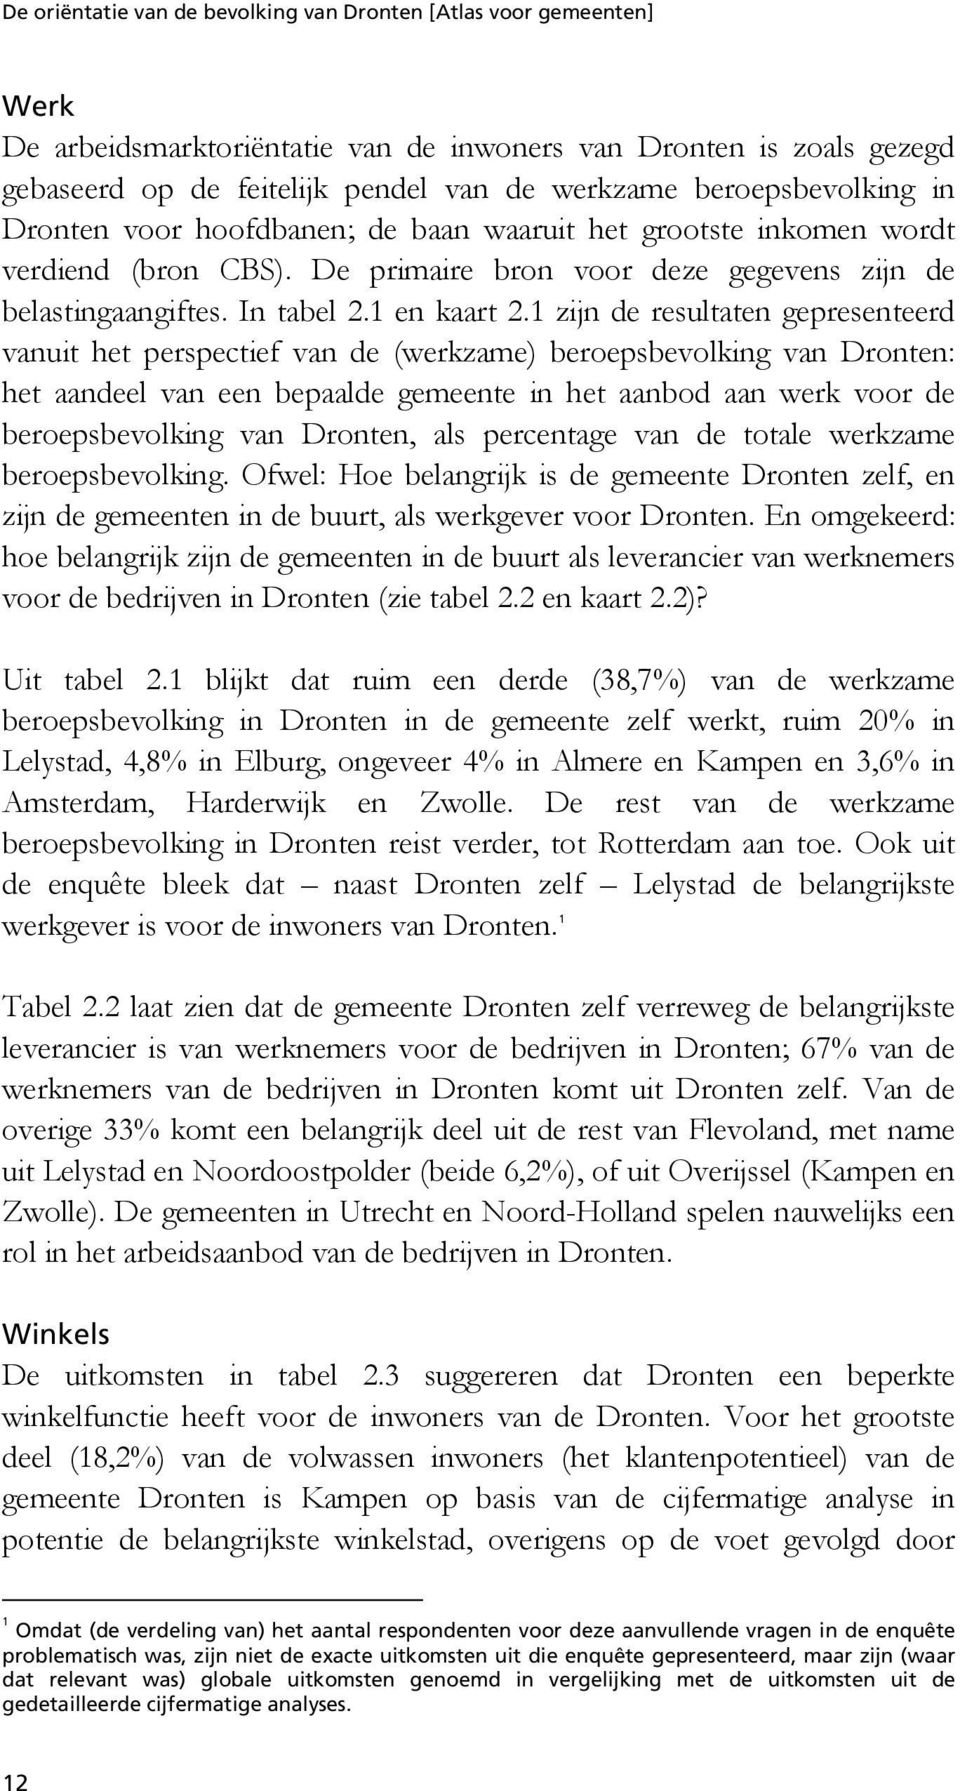 1 zijn de resultaten gepresenteerd vanuit het perspectief van de (werkzame) beroepsbevolking van Dronten: het aandeel van een bepaalde gemeente in het aanbod aan werk voor de beroepsbevolking van